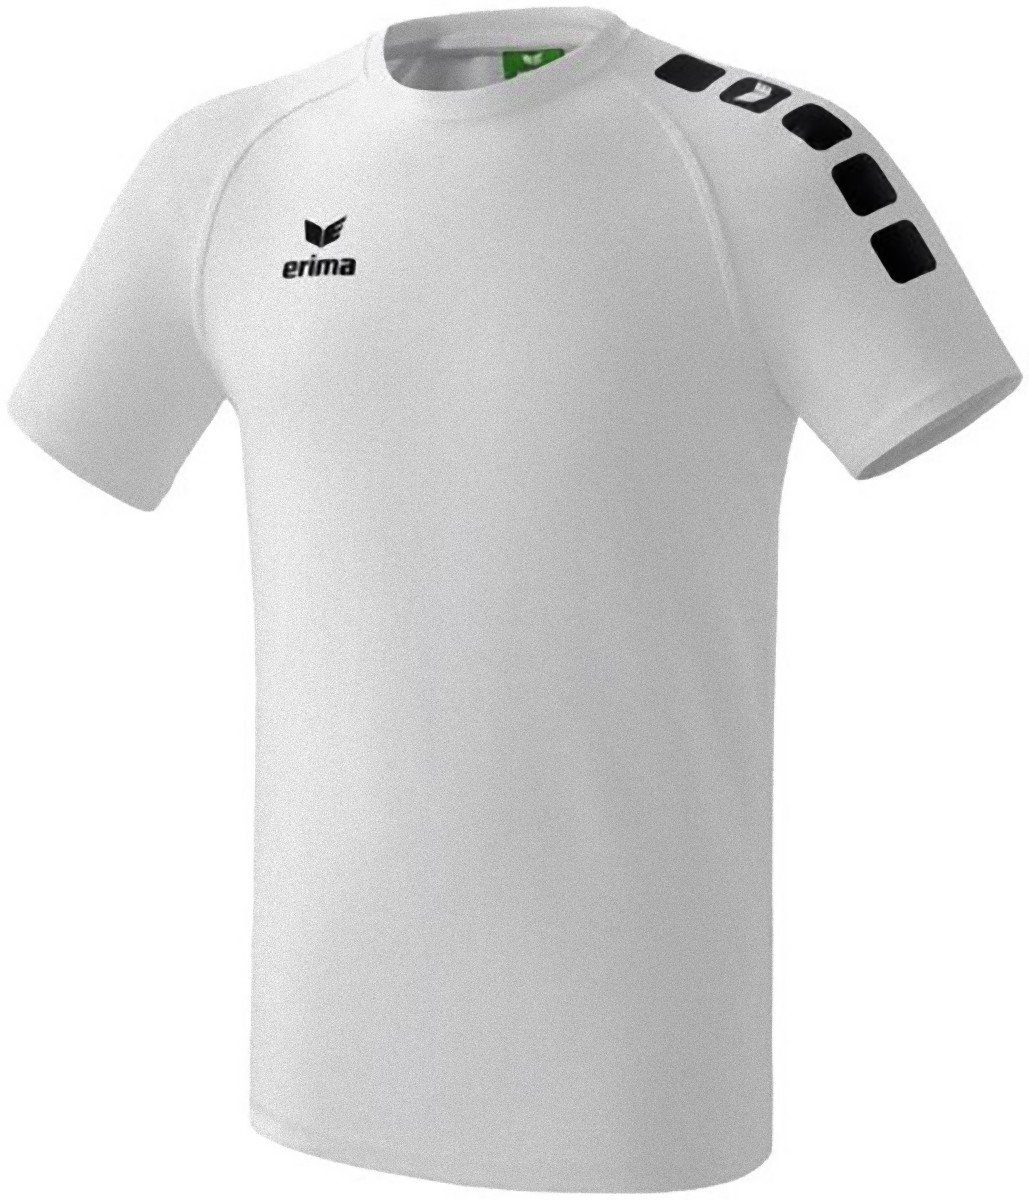 Erima Kurzarmshirt 5-CUBES Unisex Classic Gr. 116 T-Shirt Laufshirt Shirt  Trikot Laufen Sport weiss